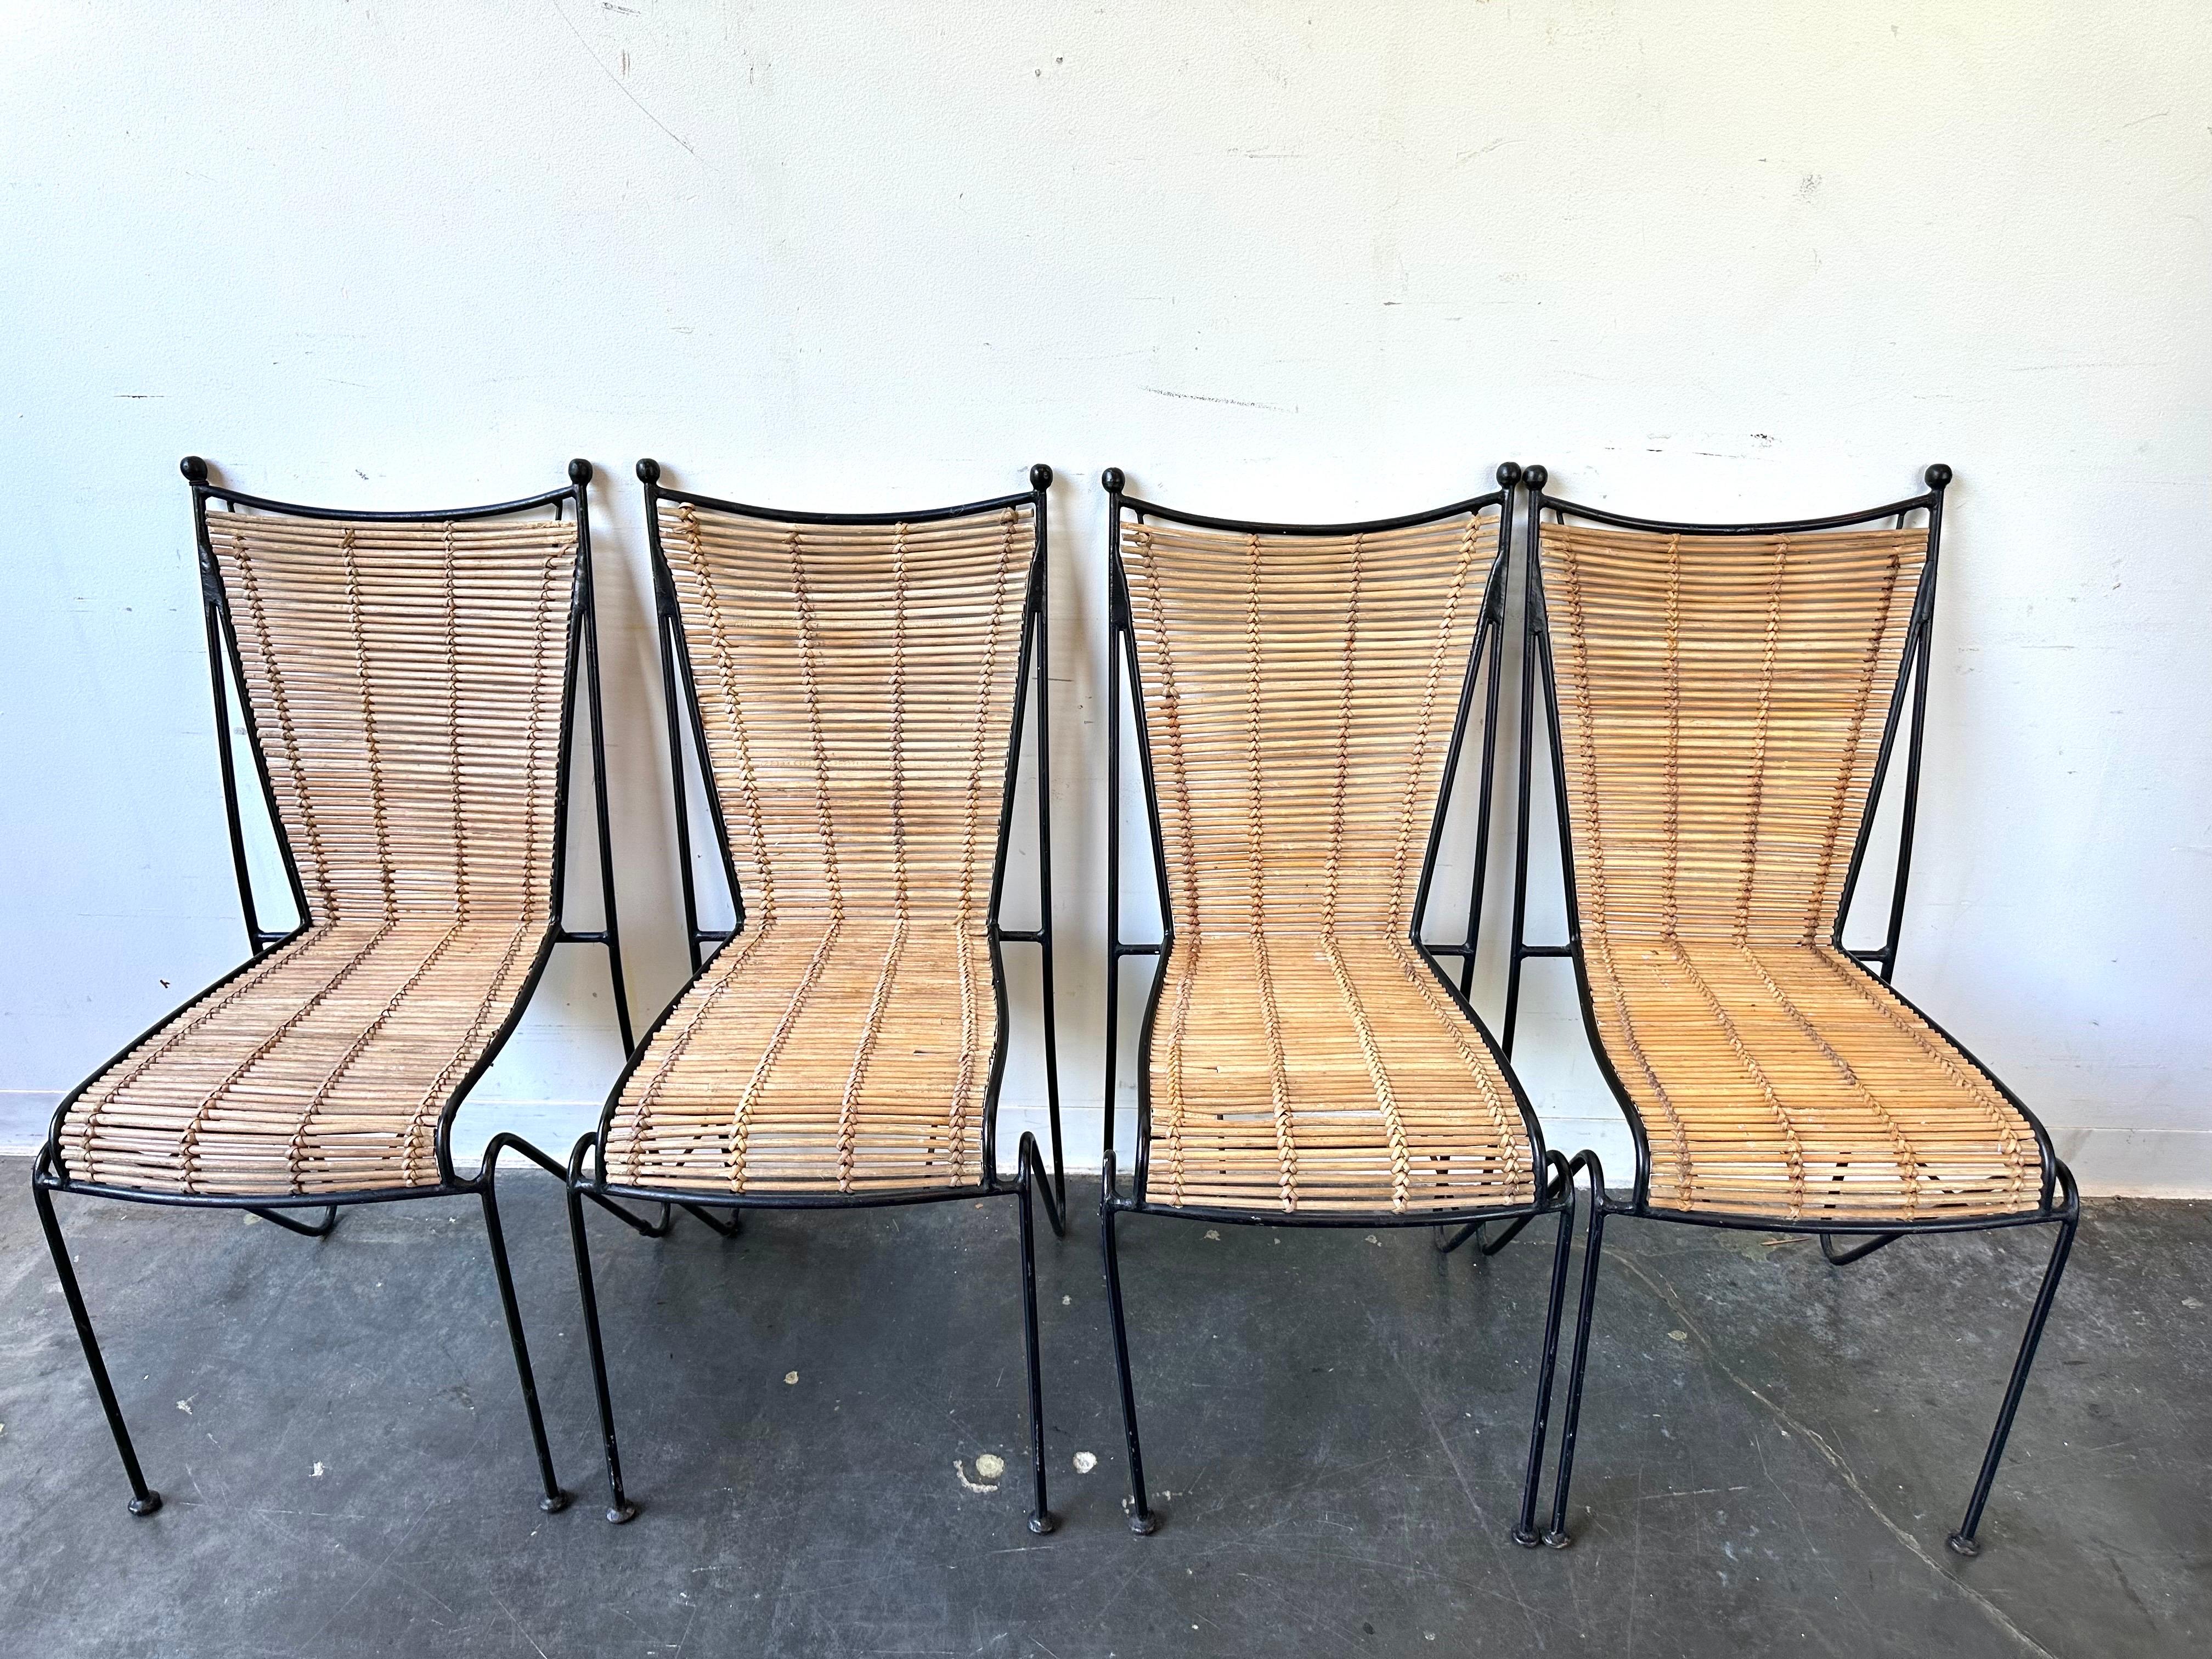 Satz von 4 Stühlen aus Schmiedeeisen und Rattan von Pipsan Saarinen Swanson für Ficks Reed, um 1960. Wunderschöne Silhouette. Ausgezeichnetes Design und exquisite Handwerkskunst. 